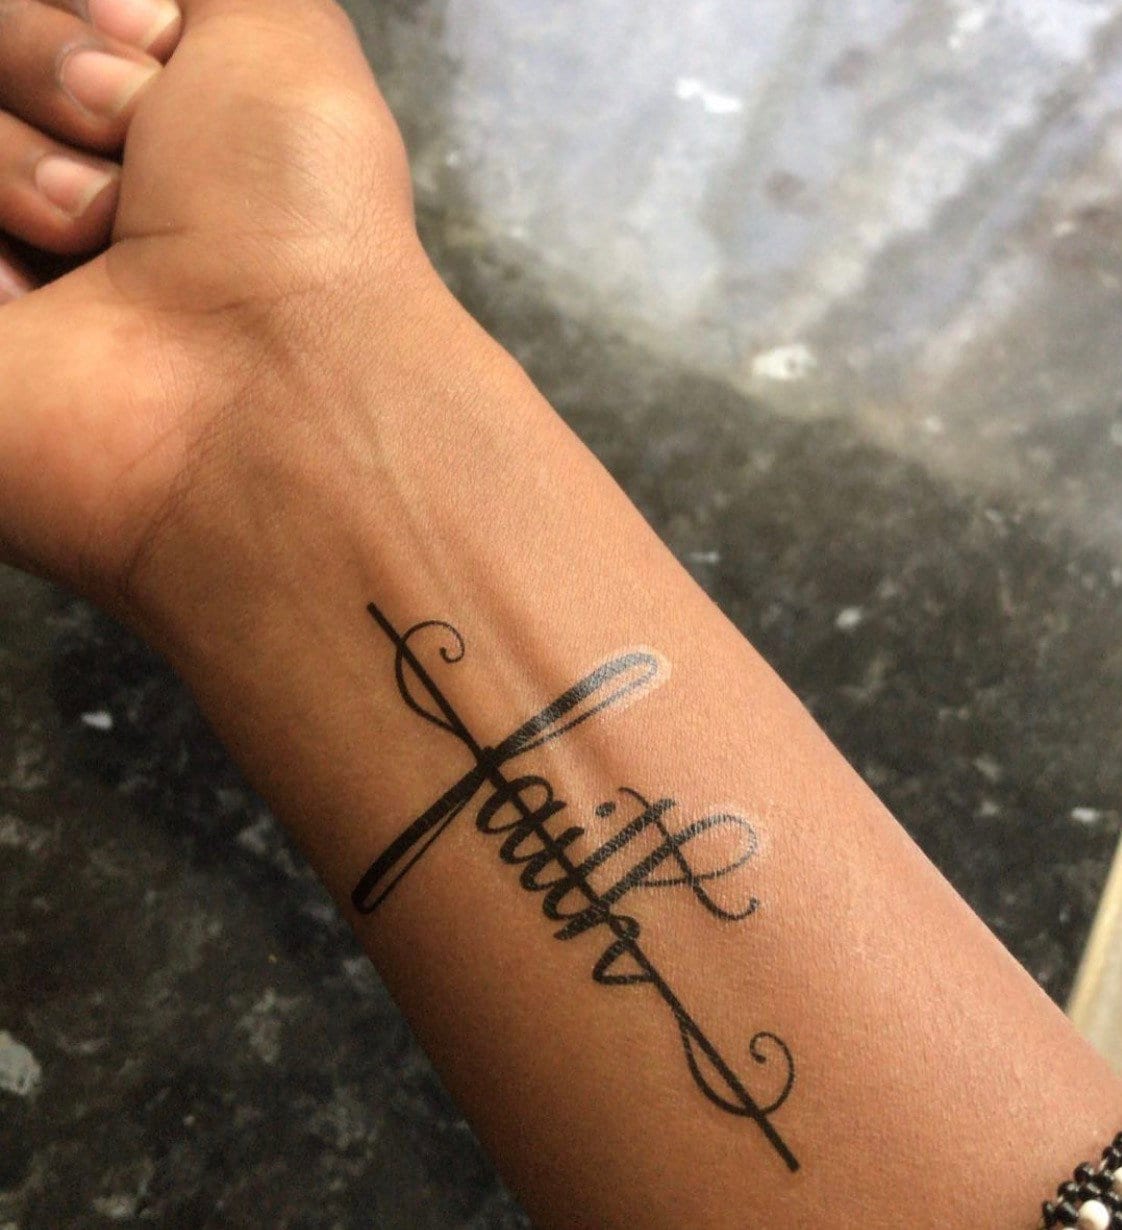 Faith cross tattoo handwritten on the inner arm